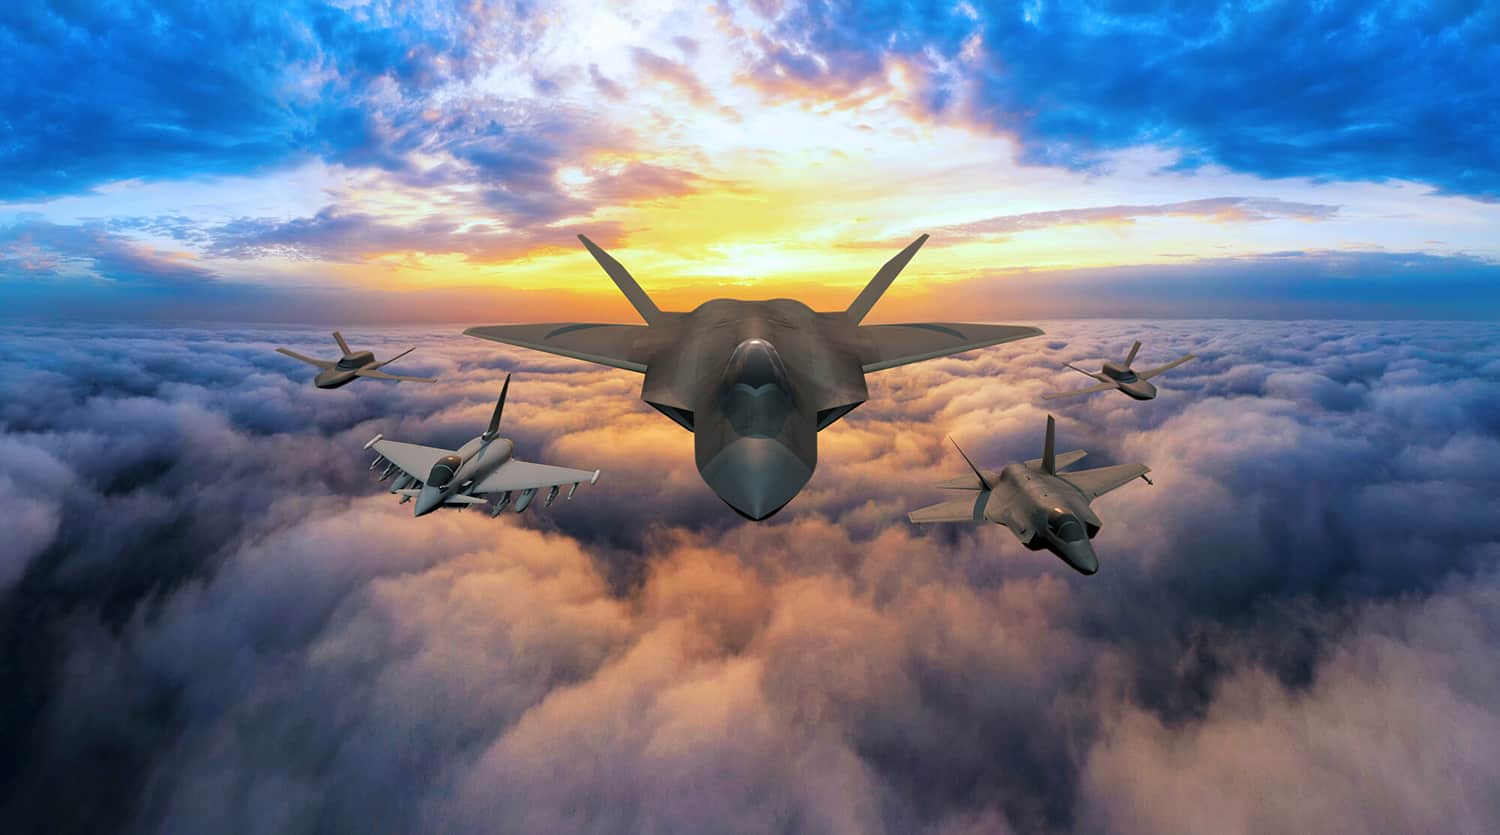 Wielka Brytania opracowuje naddźwiękowy myśliwiec stealth Tempest z uczeniem maszynowym, sztuczną inteligencją, pociskami hipersonicznymi i bronią laserową